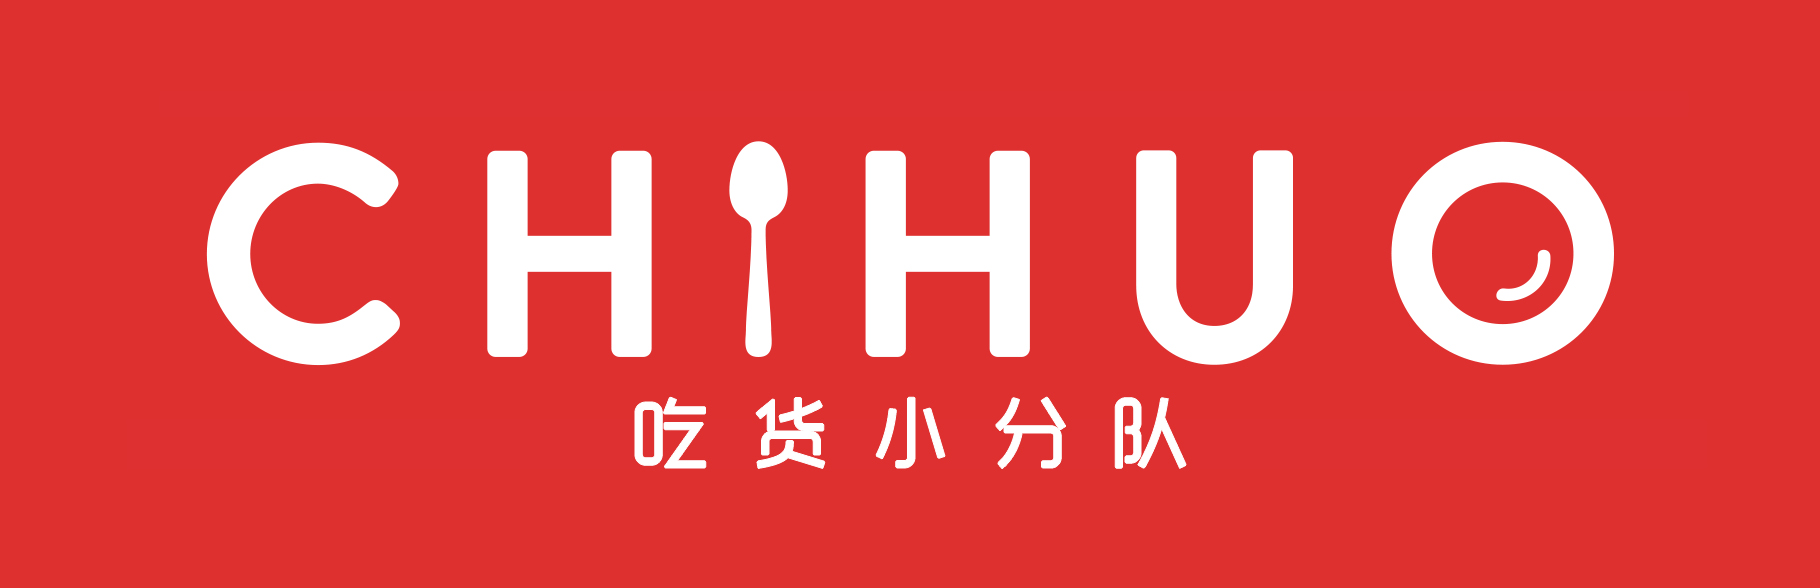 chihuo_logo_wide (en+cn).jpg